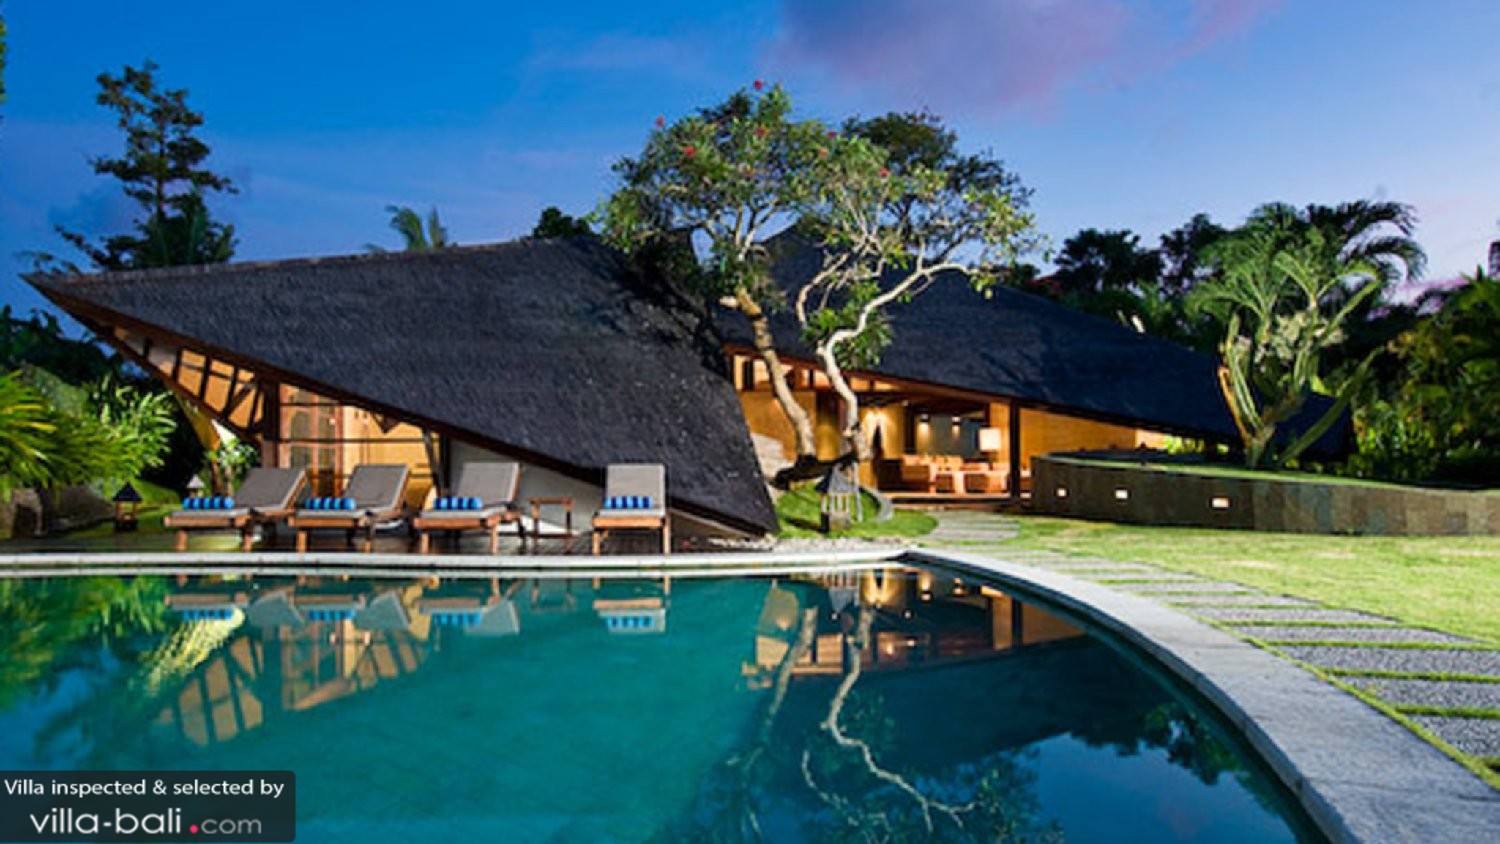 Villa Bali Bali in Kerobokan, Bali (7 bedrooms) - Best 